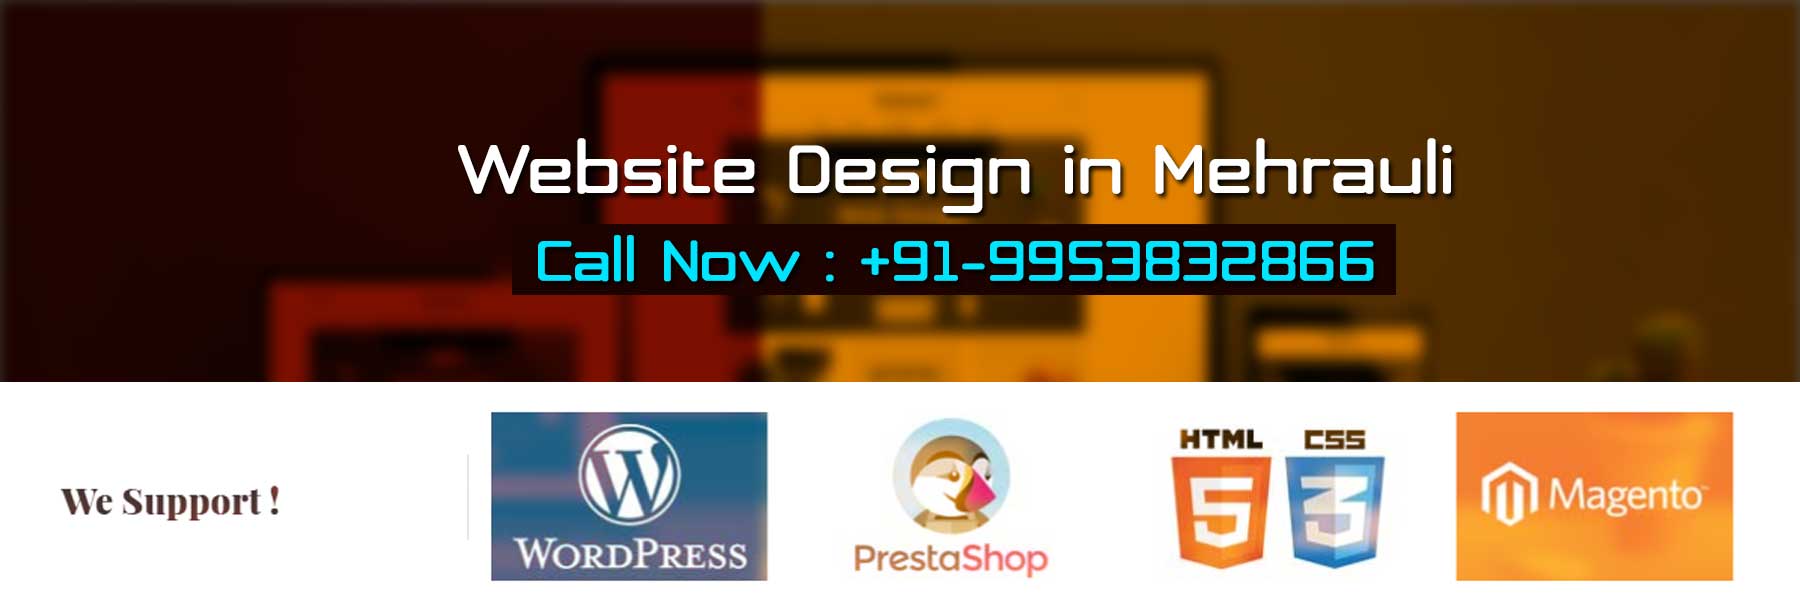 Website Design in Mehrauli